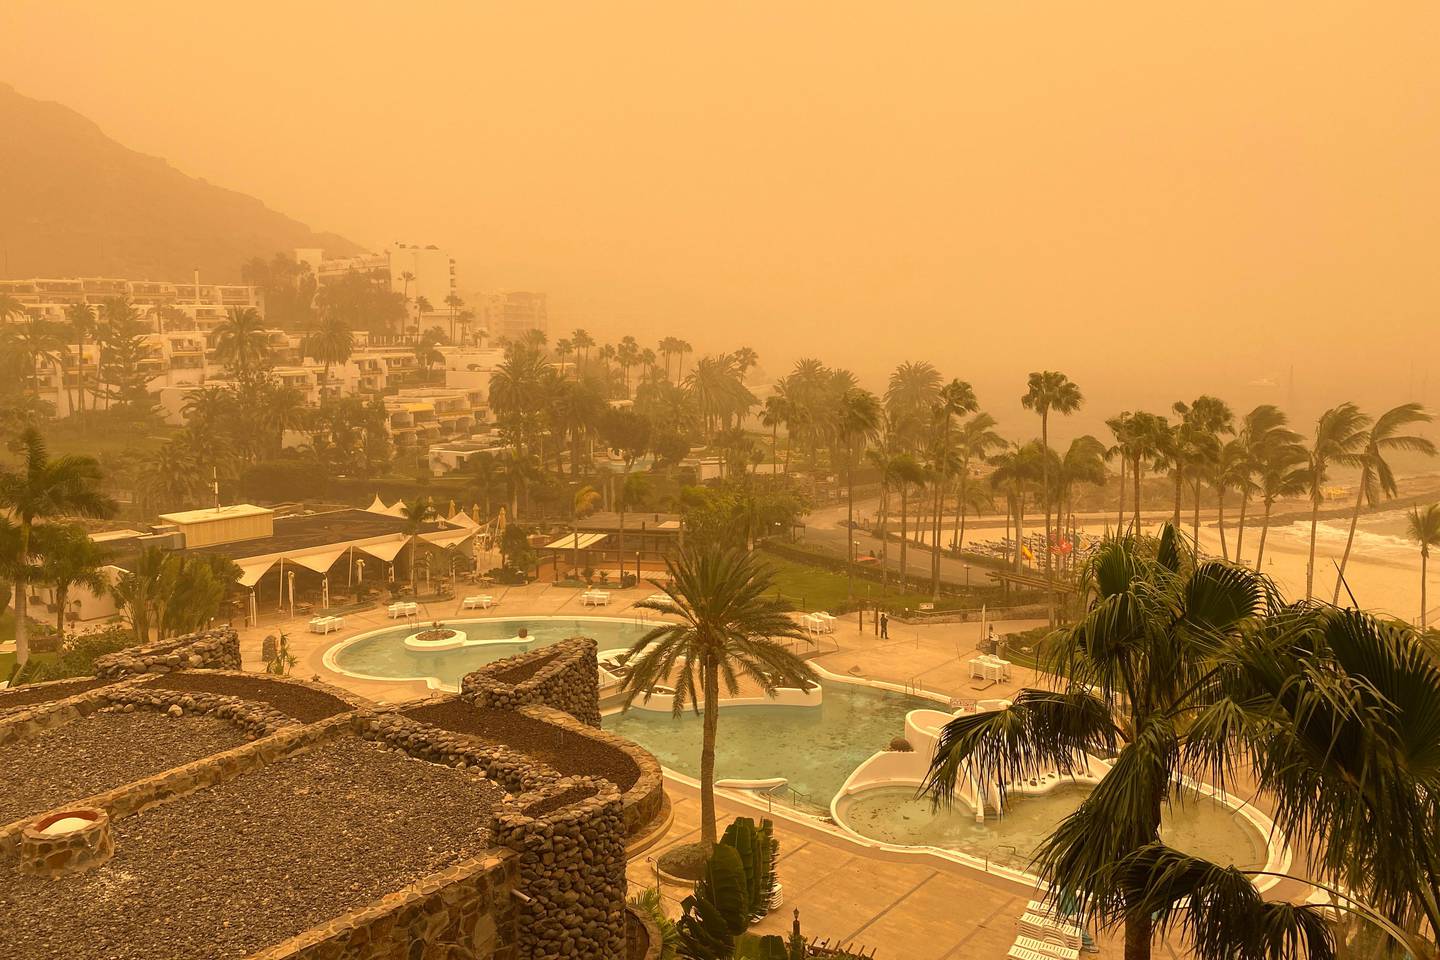 Gran Canaria 20200223. 
En sandstorm, såkalt calima, skaper problemer på Gran Canaria. Et stort antall turister kommer seg ikke hjem på grunn av stengt flyplass som følge av dårlig sikt.
Foto: Tore Meek / NTB scanpix